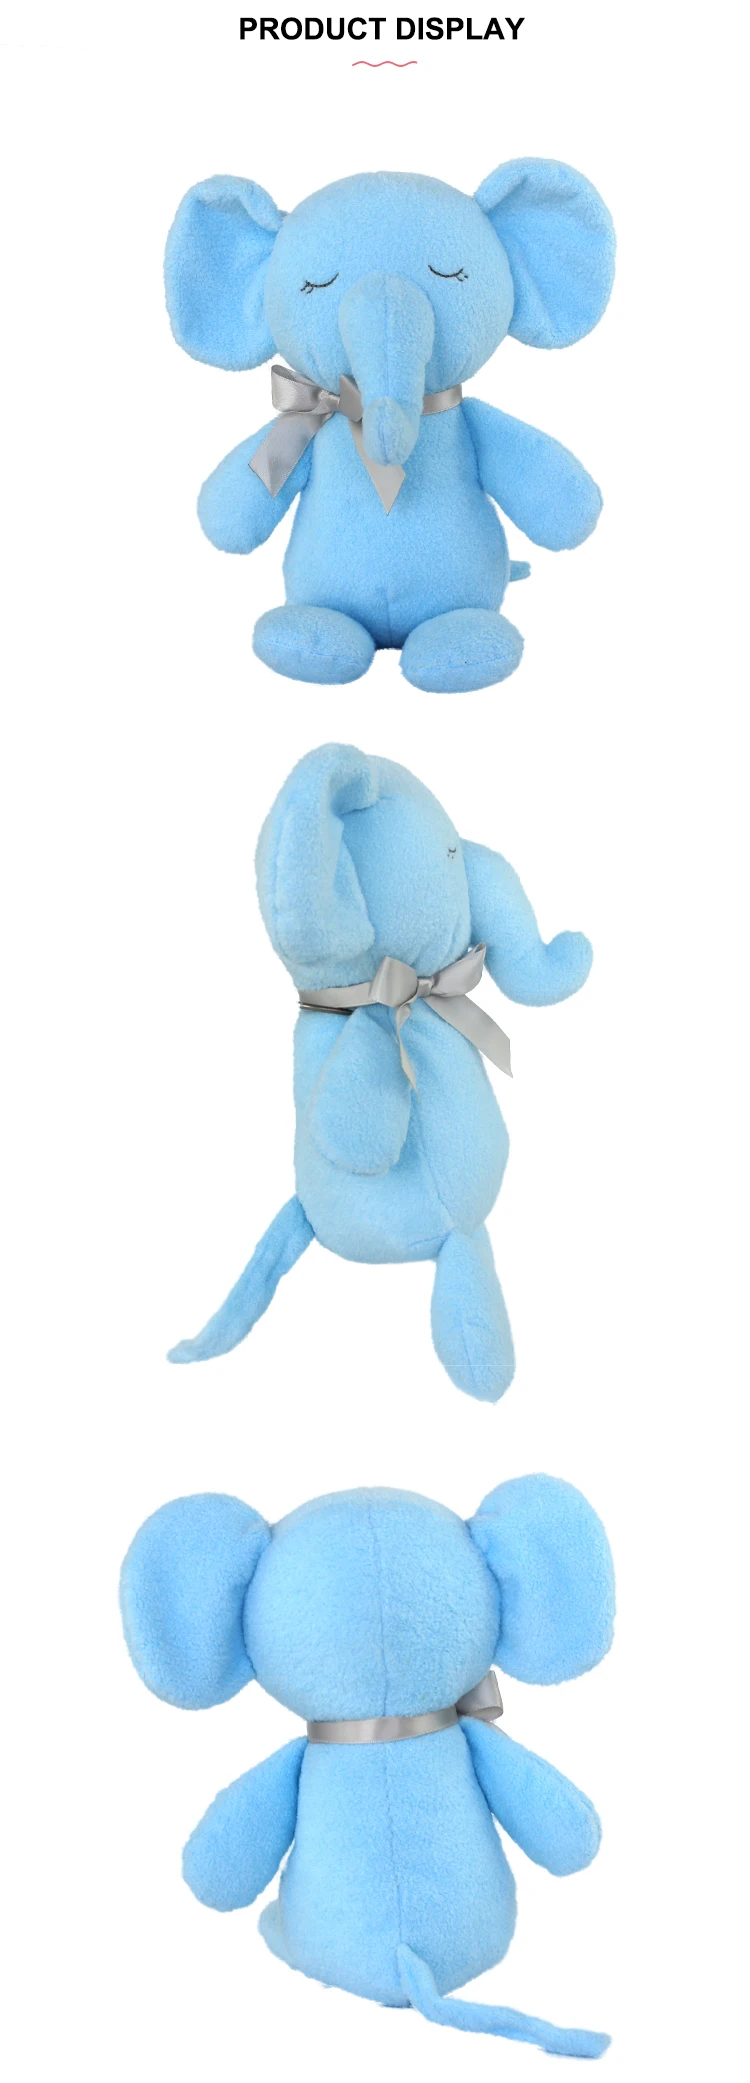 大きな耳を持つ安いかわいいぬいぐるみ青い象のぬいぐるみ Buy ブルーエレファントぬいぐるみ 安い象ぬいぐるみ ぬいぐるみゾウビッグ耳 Product On Alibaba Com